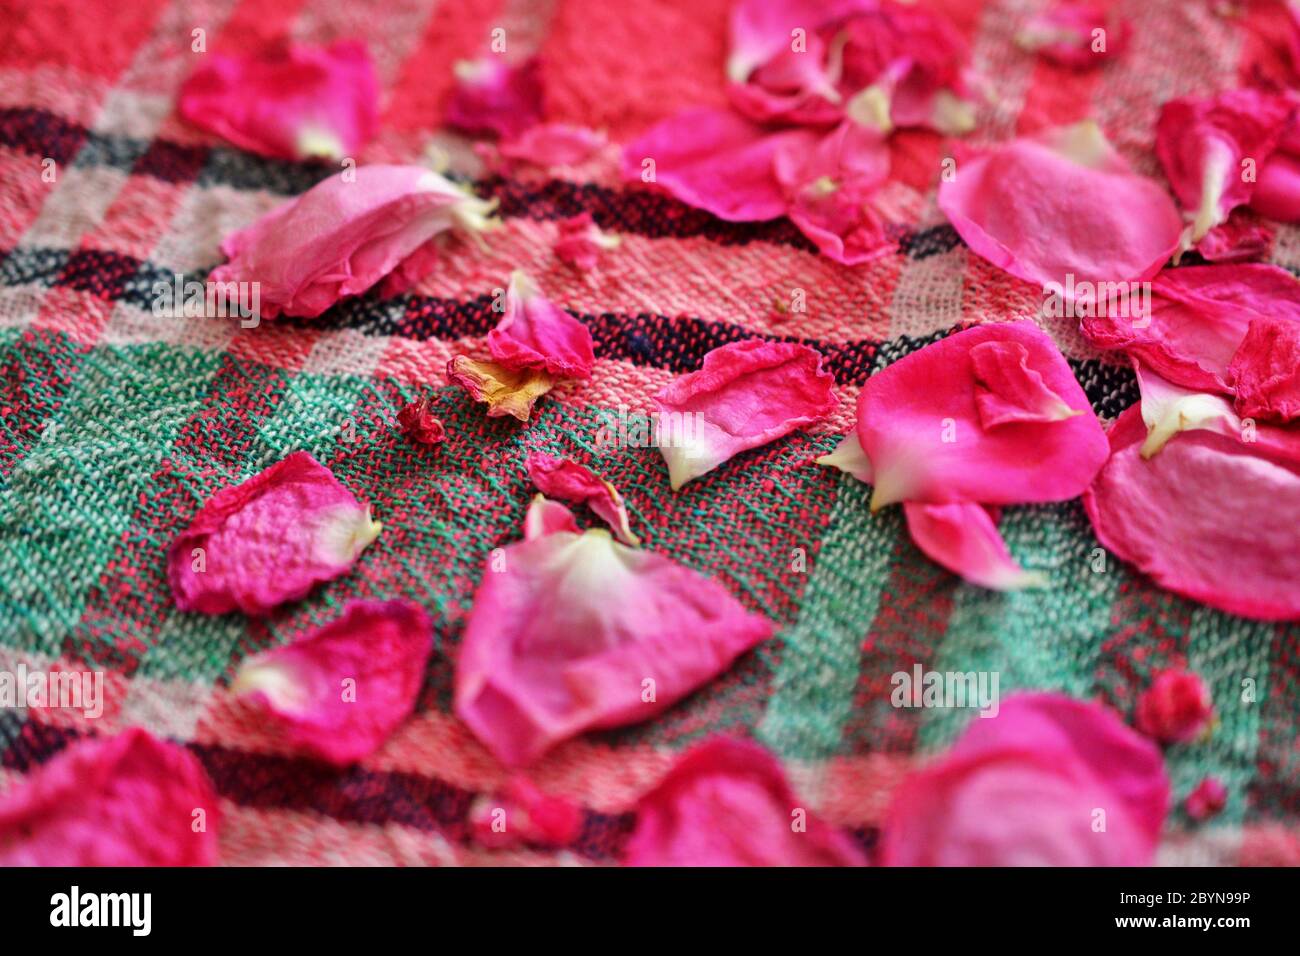 Rosenblätter trocknen auf einem Tischtuch Stockfotografie - Alamy